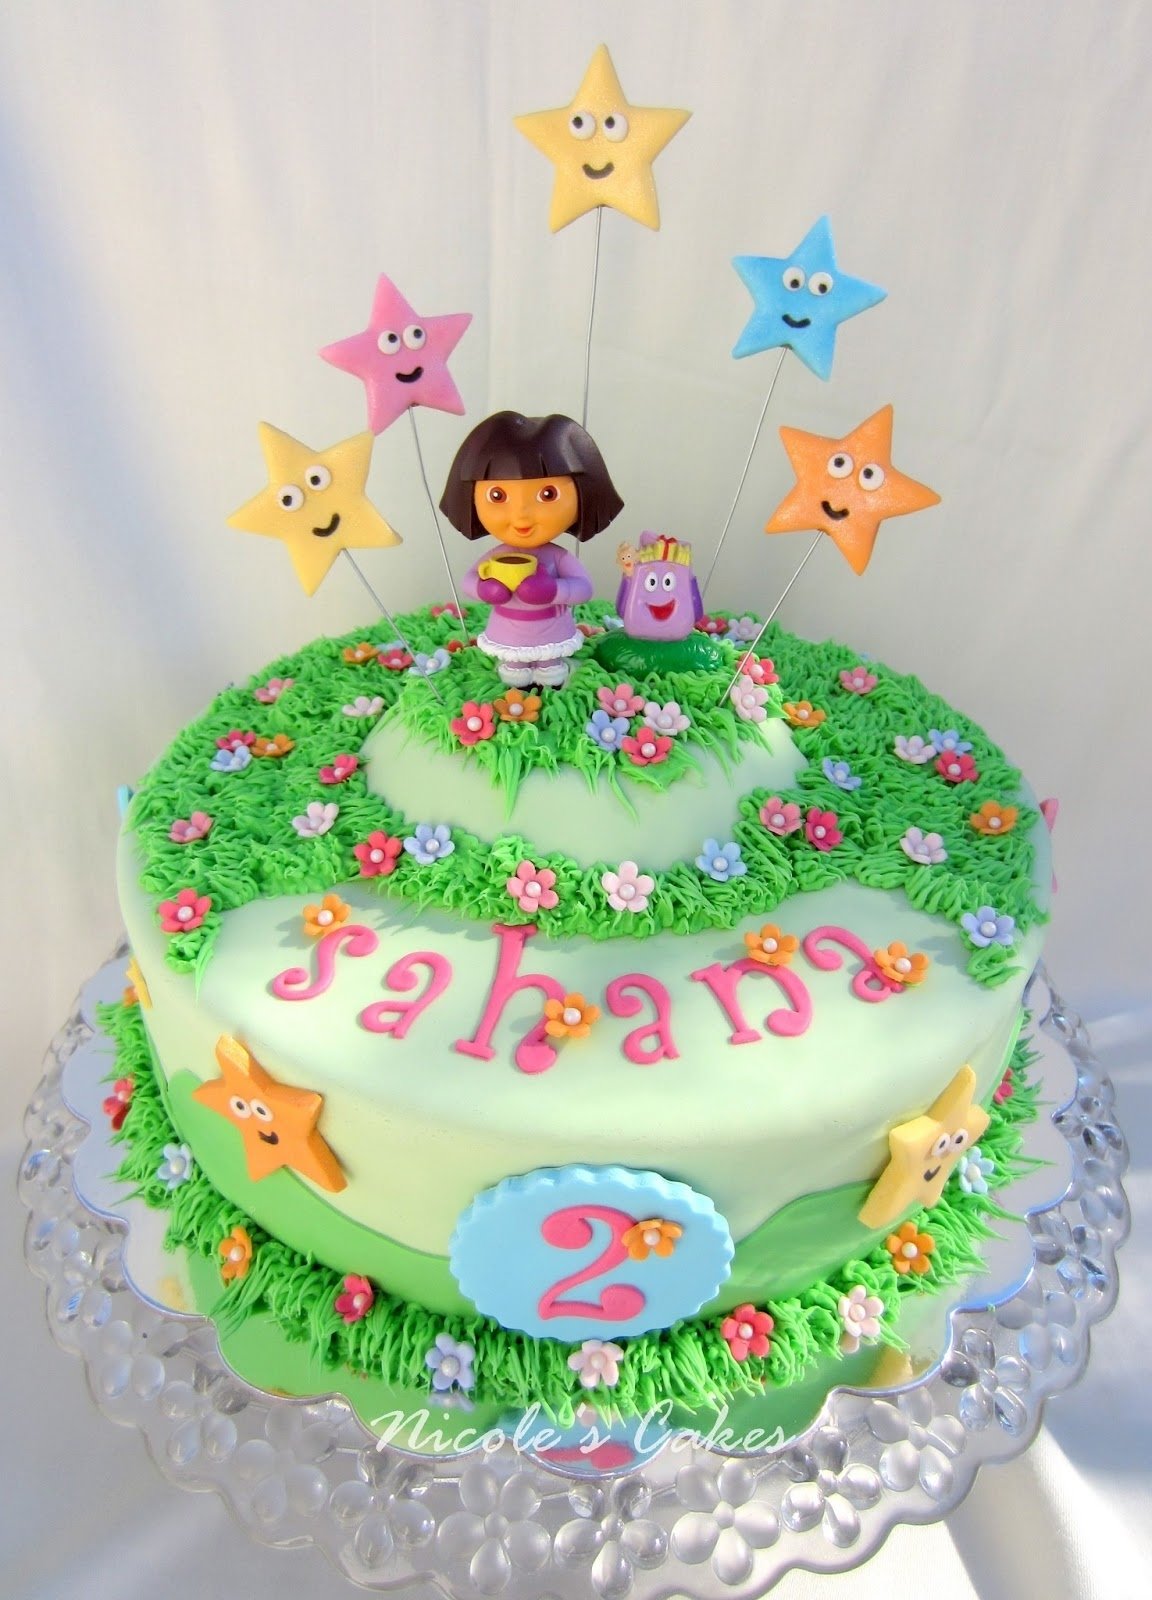 10 Awesome Dora The Explorer Cake Ideas custom designed birthday cake for a young dora the explorer fan 2022